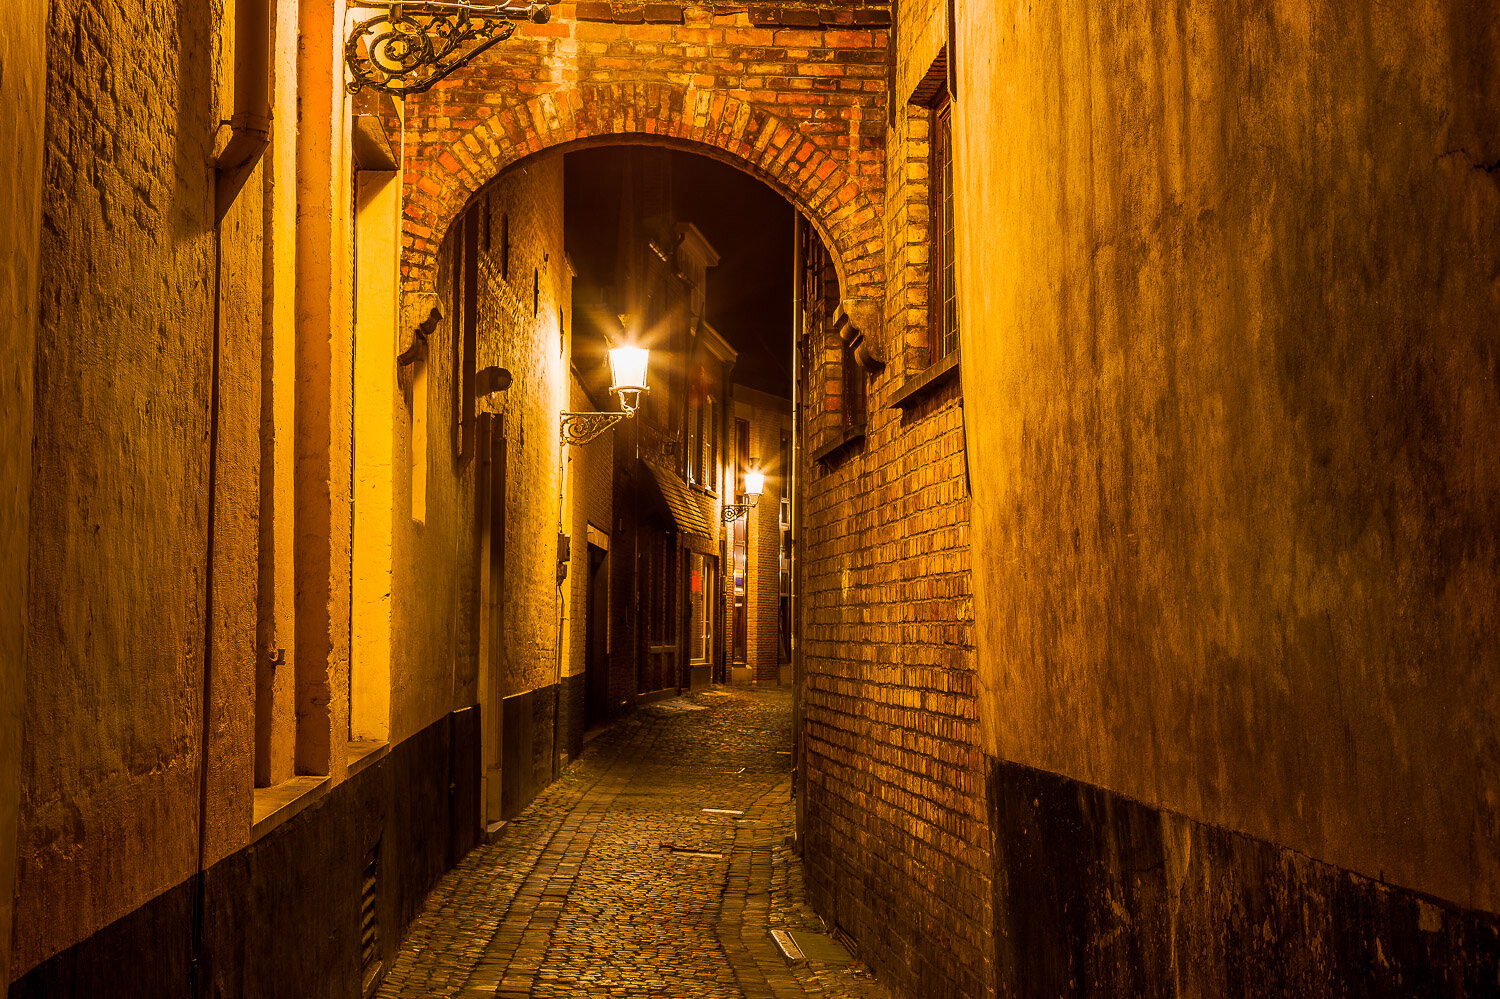 Alleyway at Night, Bruges, Belgium